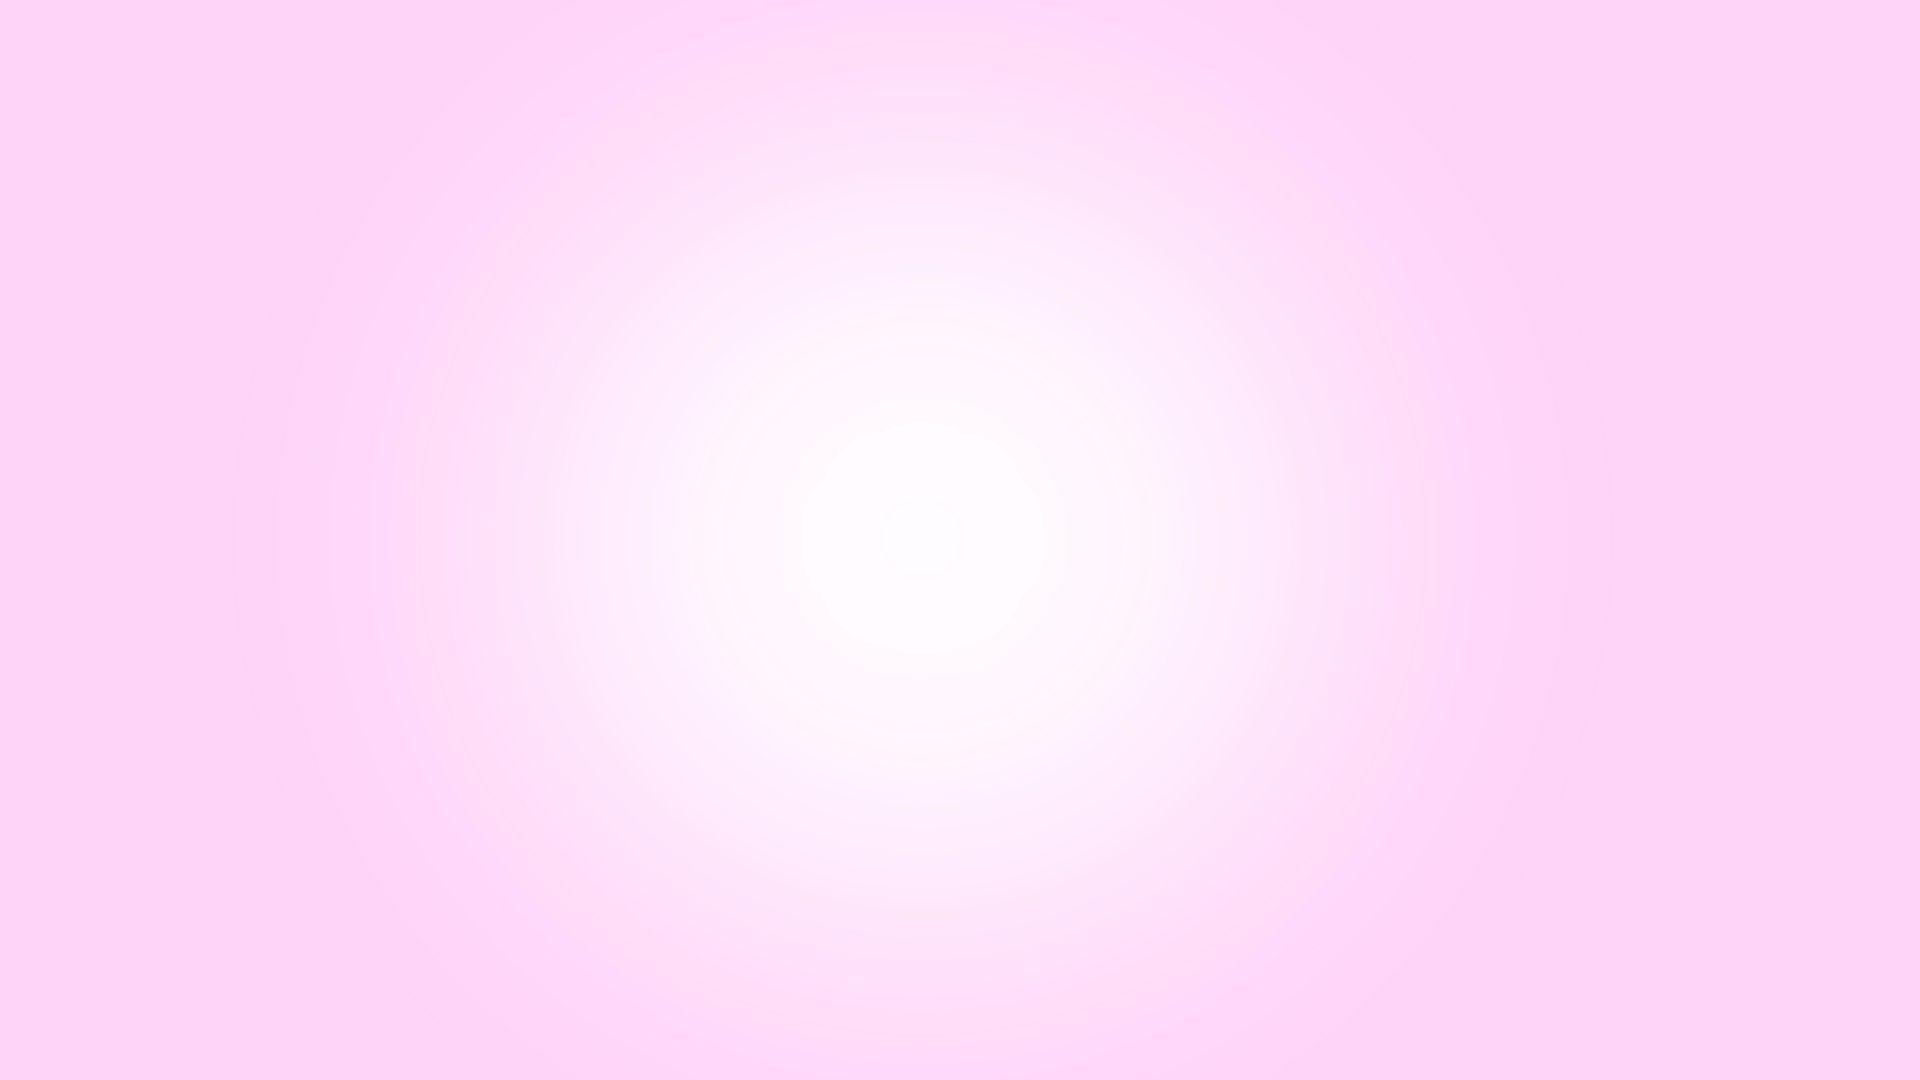 plain light pink background for twitter